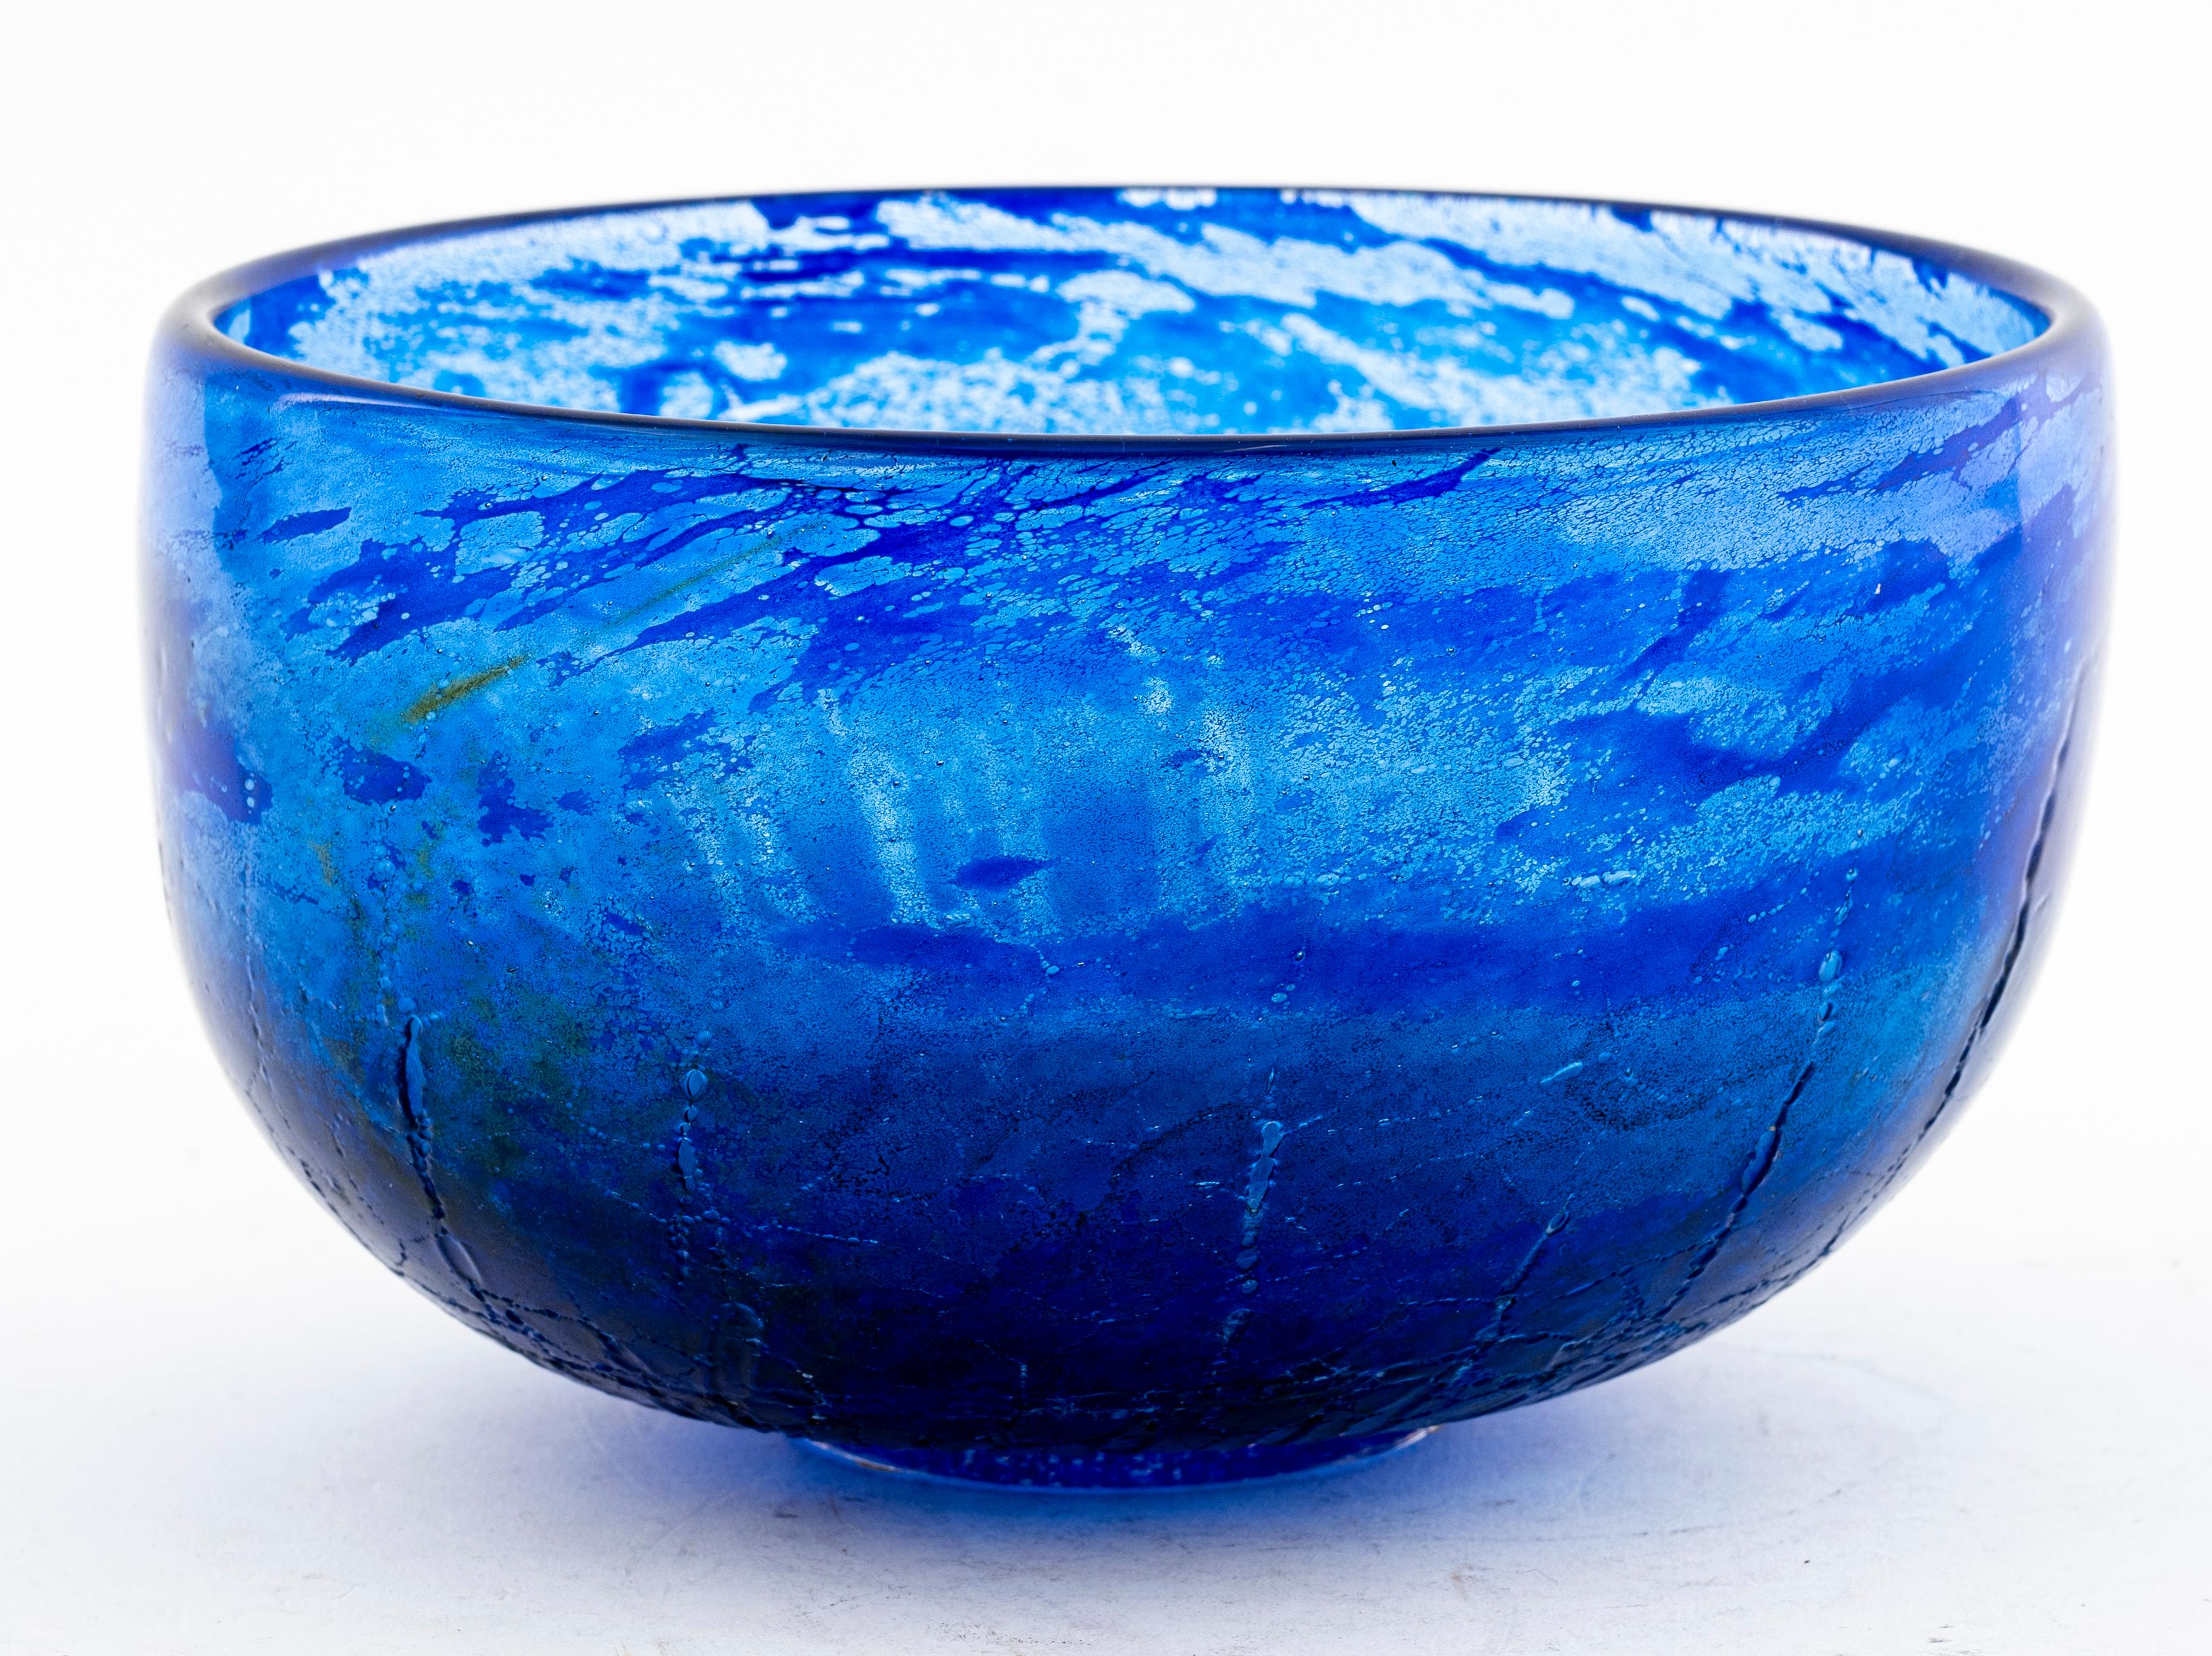 Goran Warff (Swedish, b. 1933) crystal bowl, designed for Kosta Boda. Includes an inscription on the bottom: Kosta / 57411 / Warff.